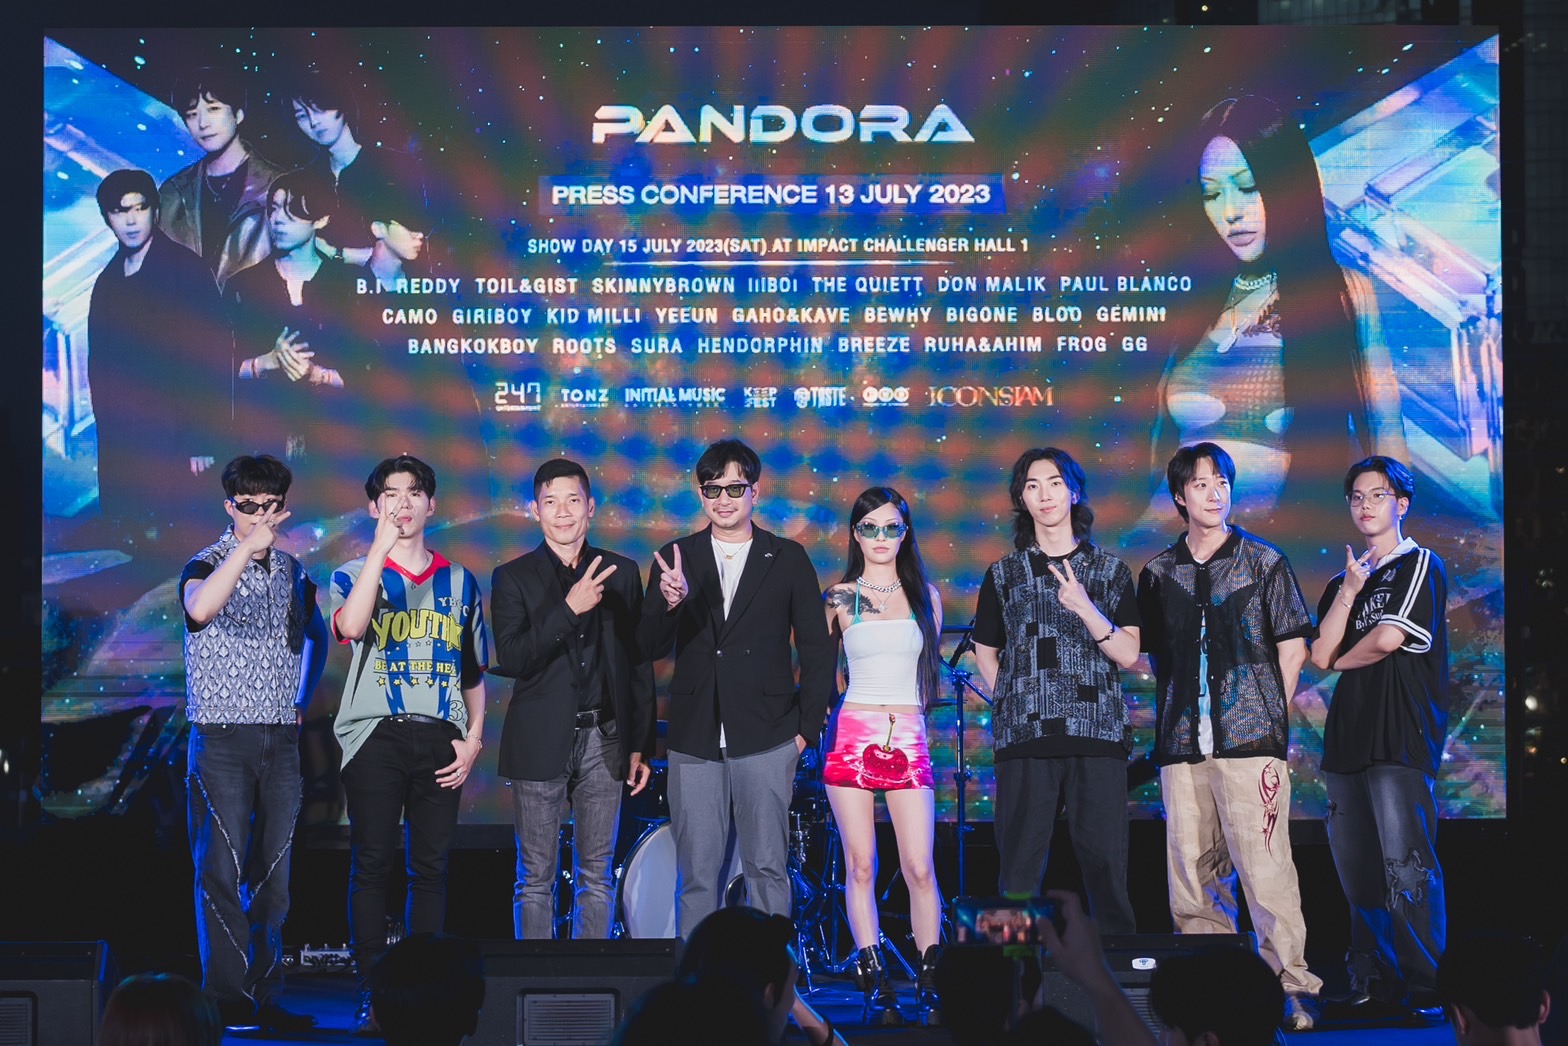 เรียกน้ำย่อย! GAHO&KAVE และ CAMO เชย์ใฮแฟน ๆในงานแถลงข่าว Pandora Festival 2023